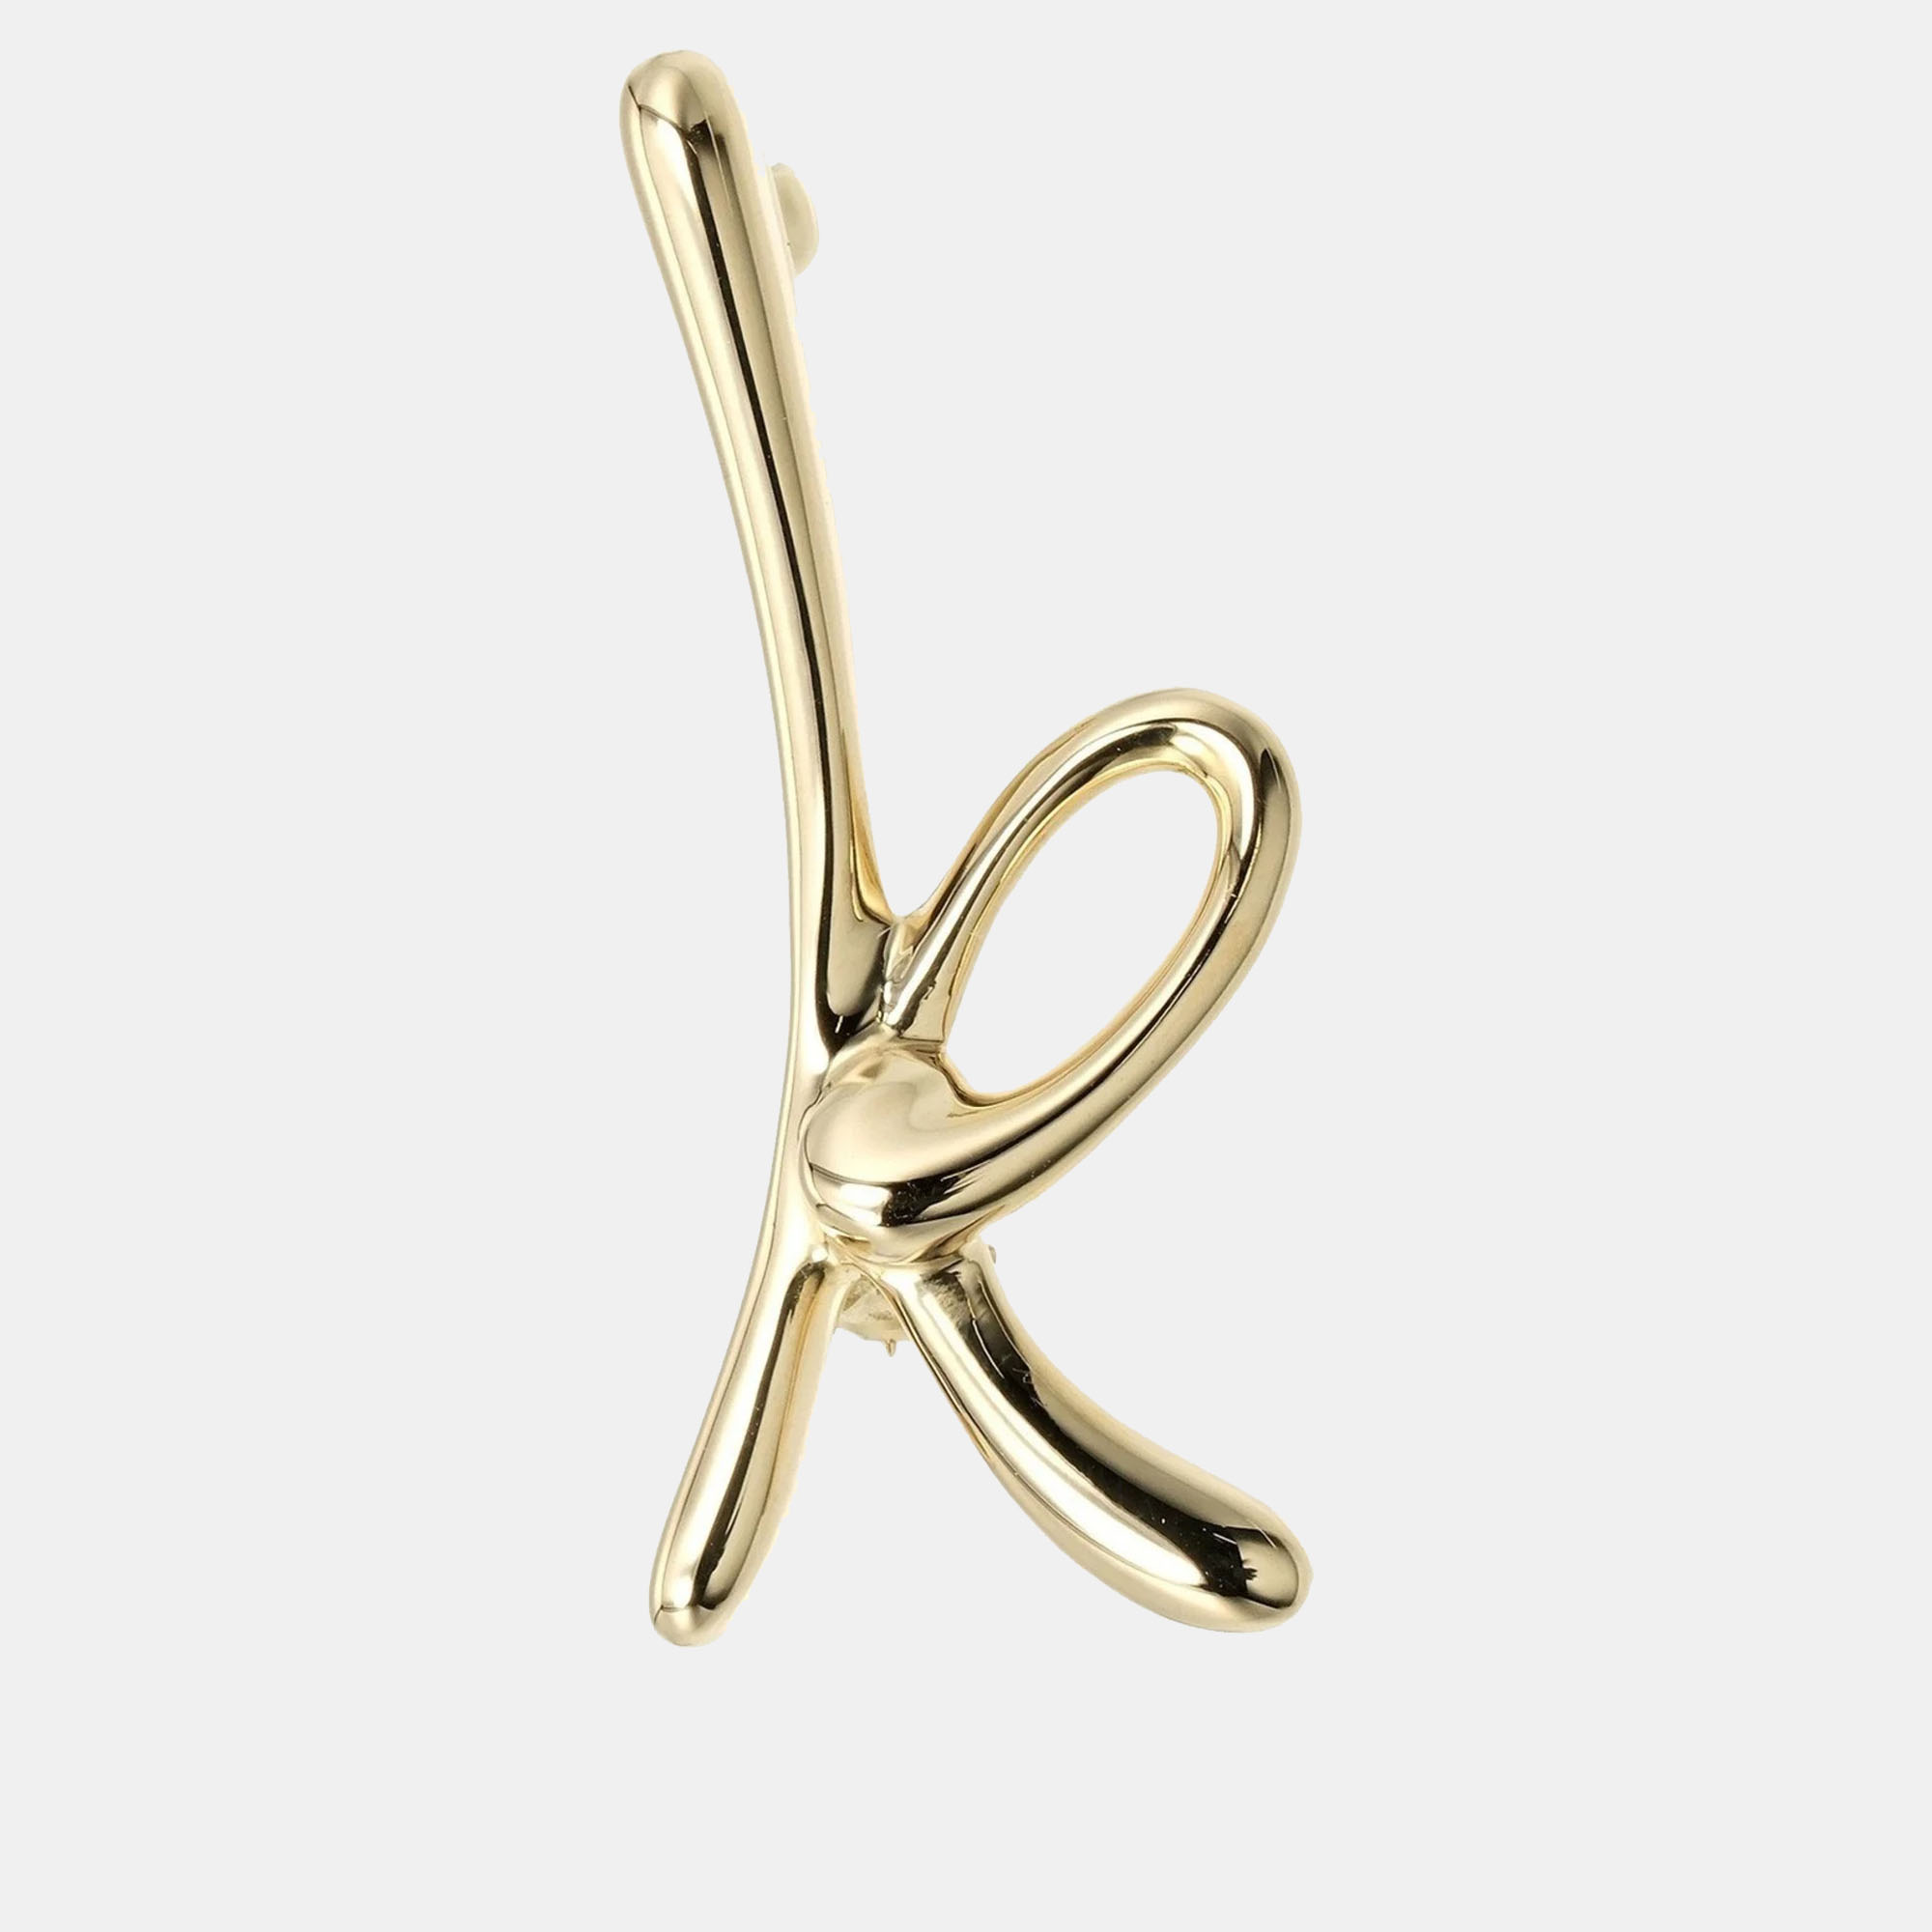 

Tiffany & Co. 18K Yellow Gold Elsa Peretti Initial 'K' Brooch Pin